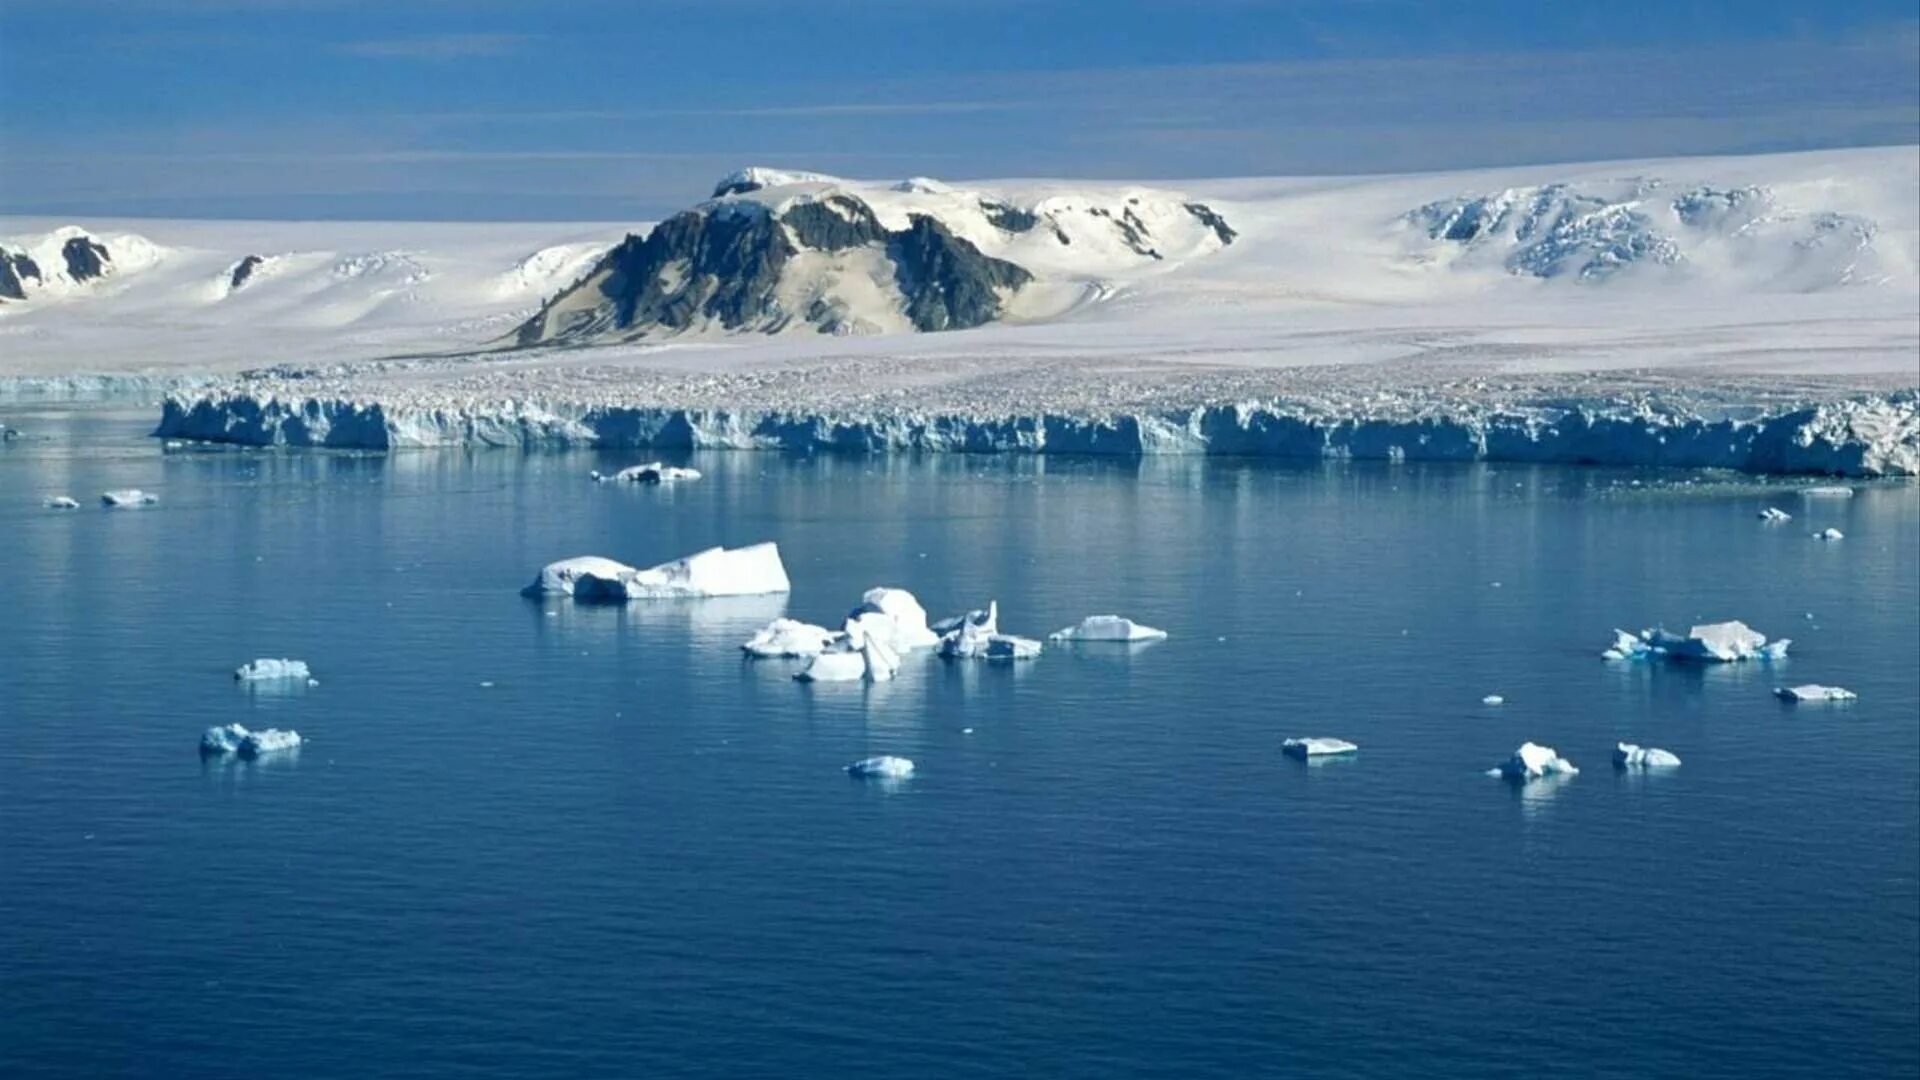 Антарктида Гренландия Арктика Северный Ледовитый океан. Северный Ледовитый океан Южный полюс. Северный полюс Арктика. Северный Ледовитый океан и Антарктида. Ледовитый океан факты